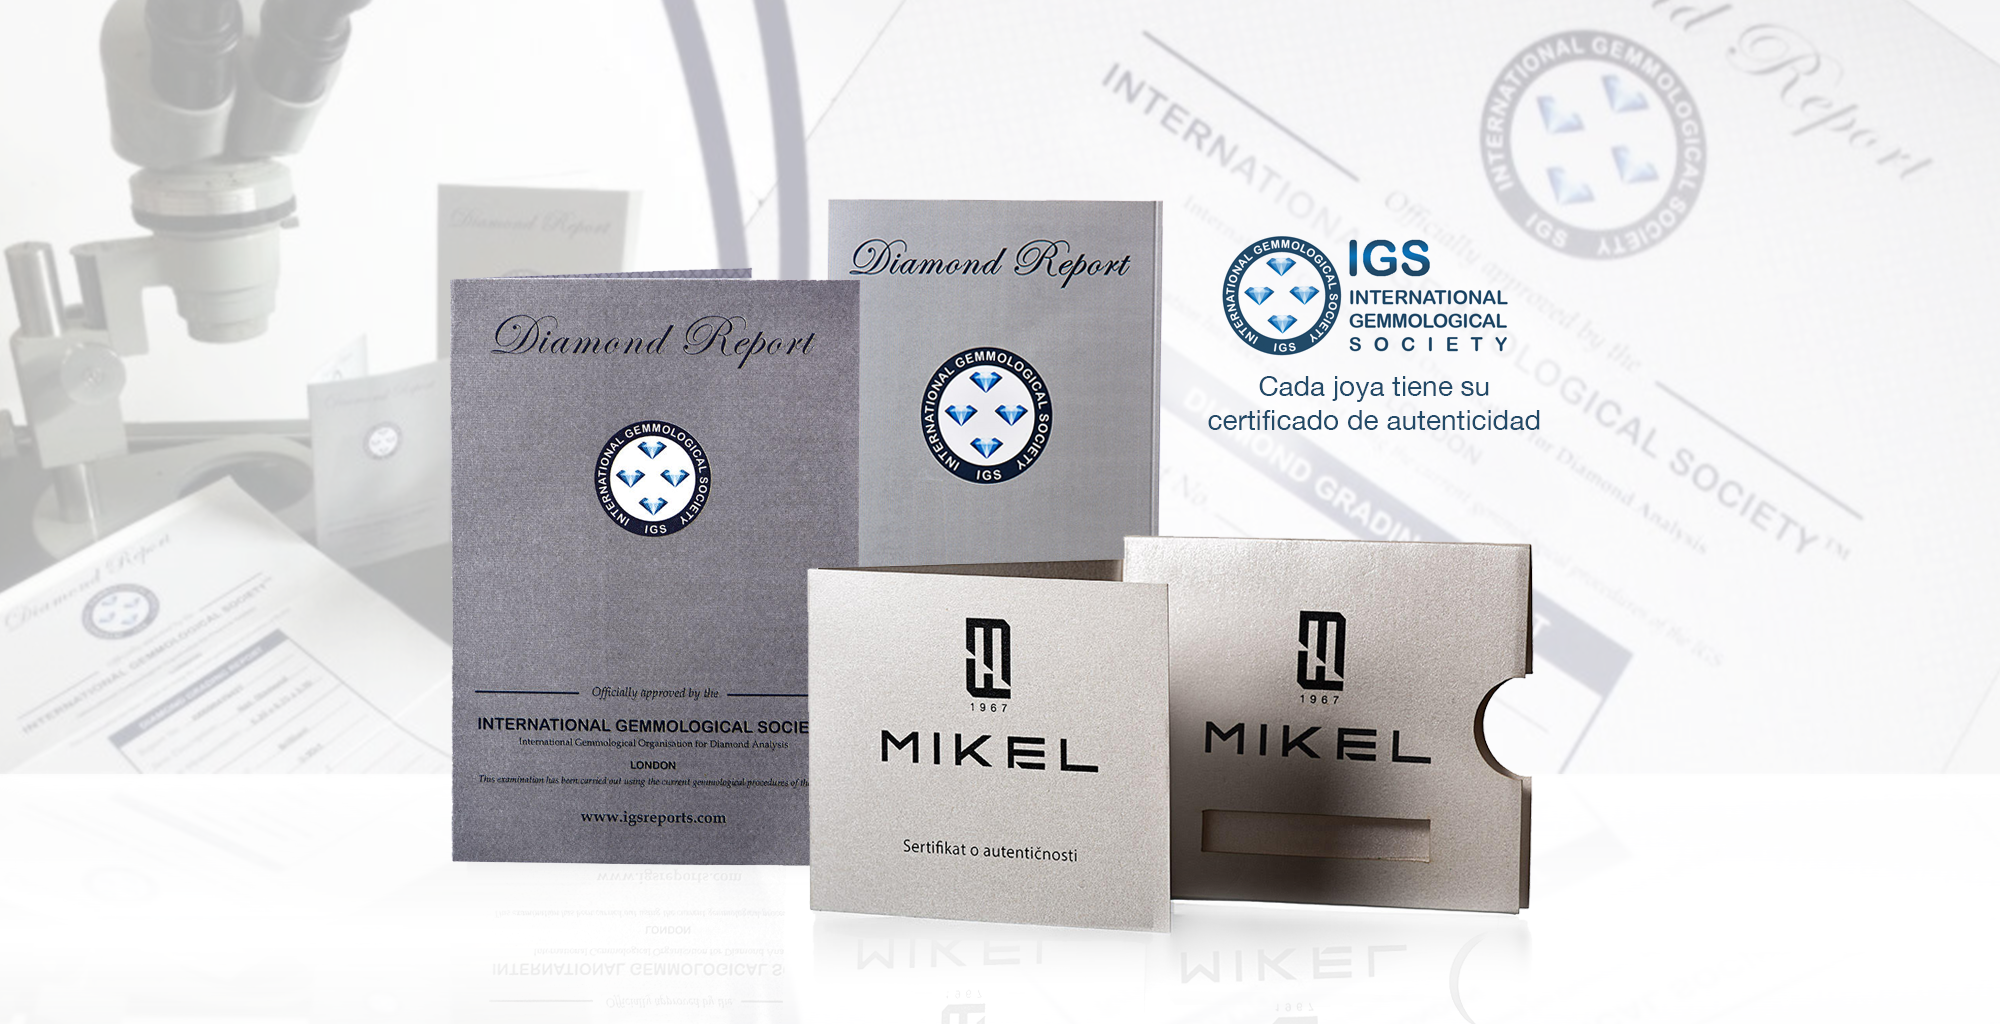 Mikel F Diamond Centar posee los certificados de autenticidad para cada joya que vende en sus tiendas.